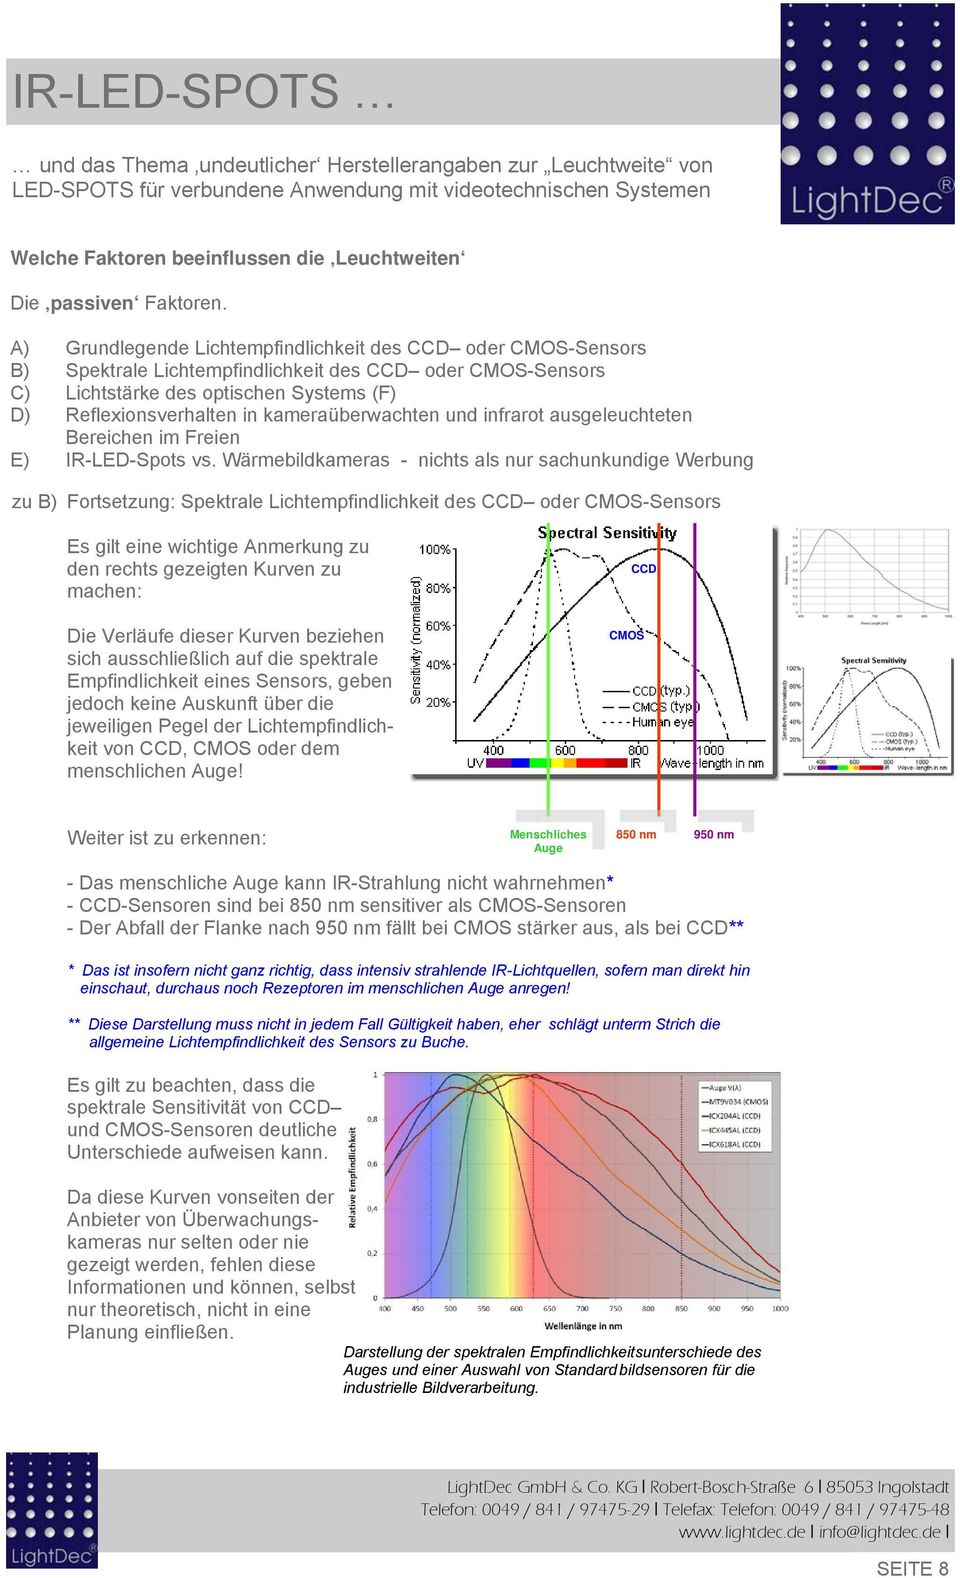 Wärmebildkameras - nichts als nur sachunkundige Werbung zu B) Fortsetzung: Spektrale Lichtempfindlichkeit des CCD oder CMOS-Sensors Es gilt eine wichtige Anmerkung zu den rechts gezeigten Kurven zu